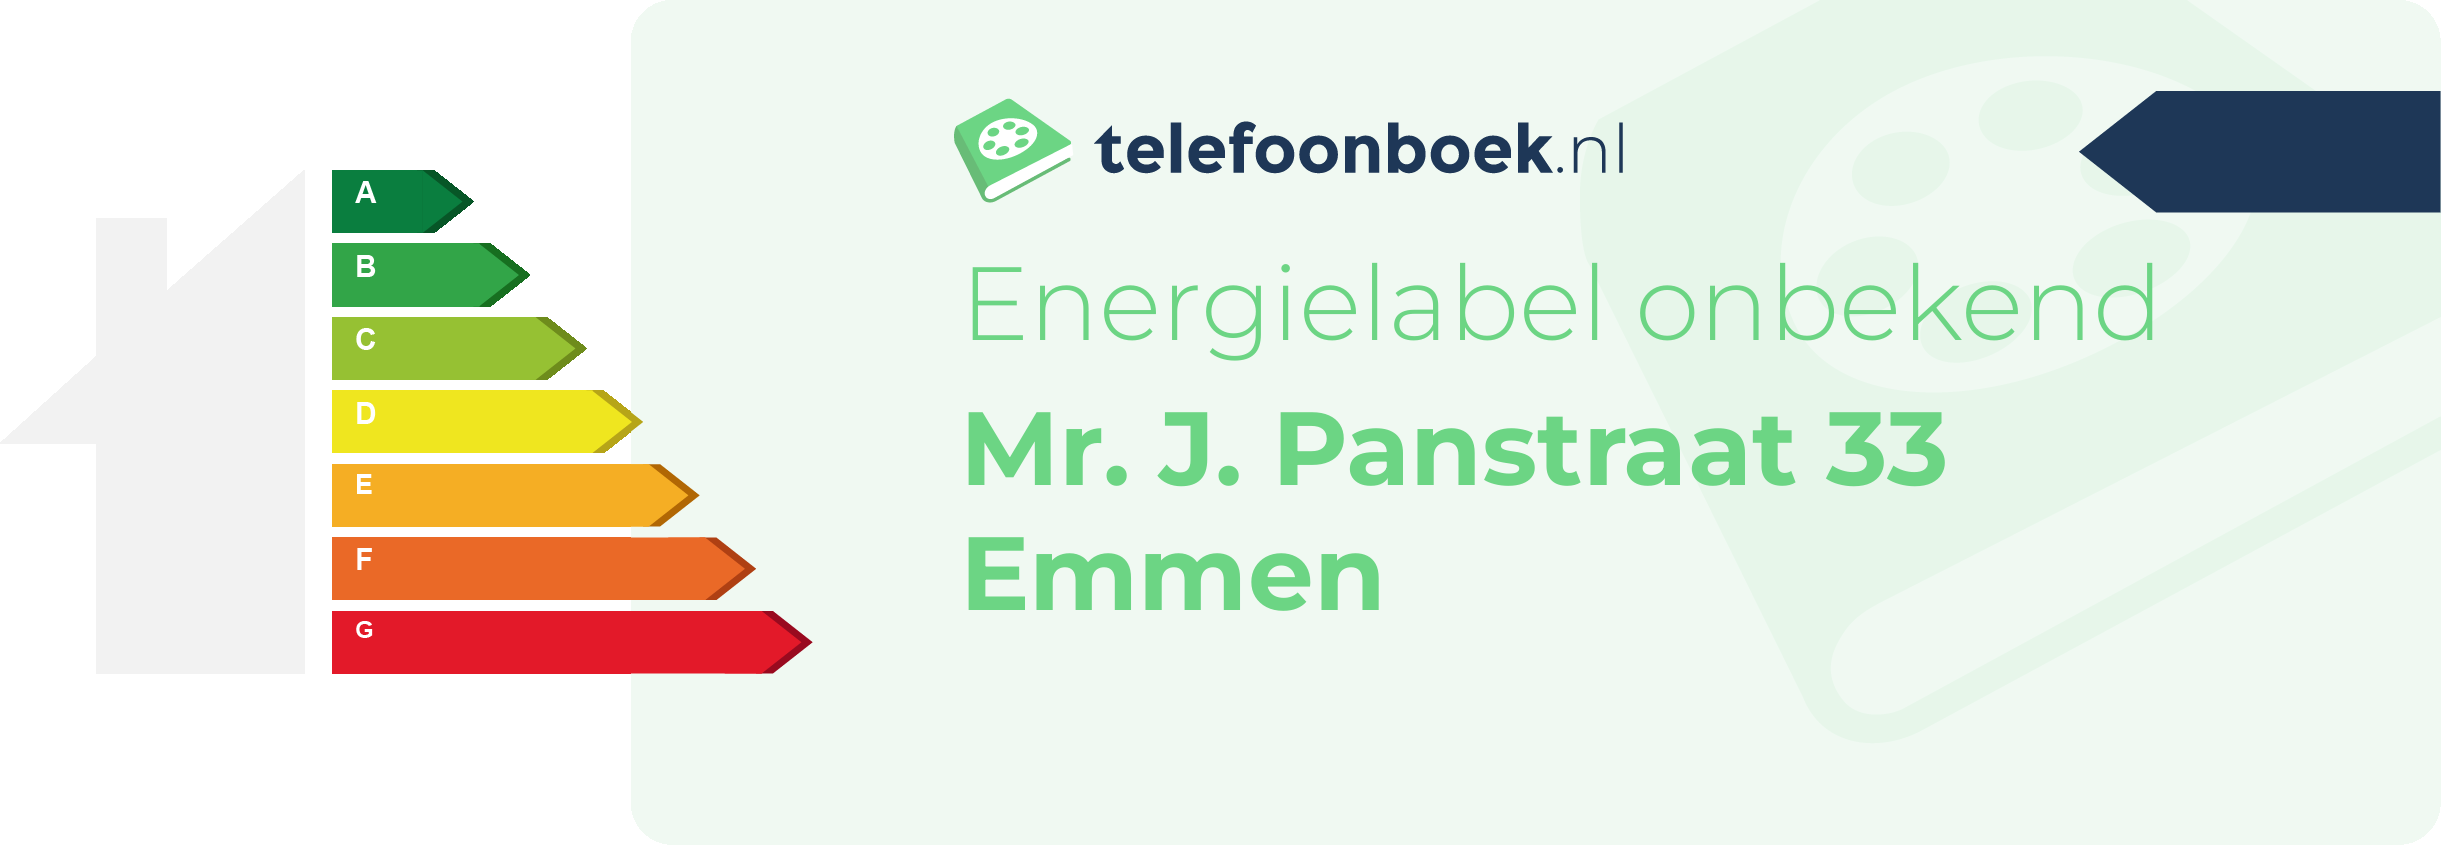 Energielabel Mr. J. Panstraat 33 Emmen